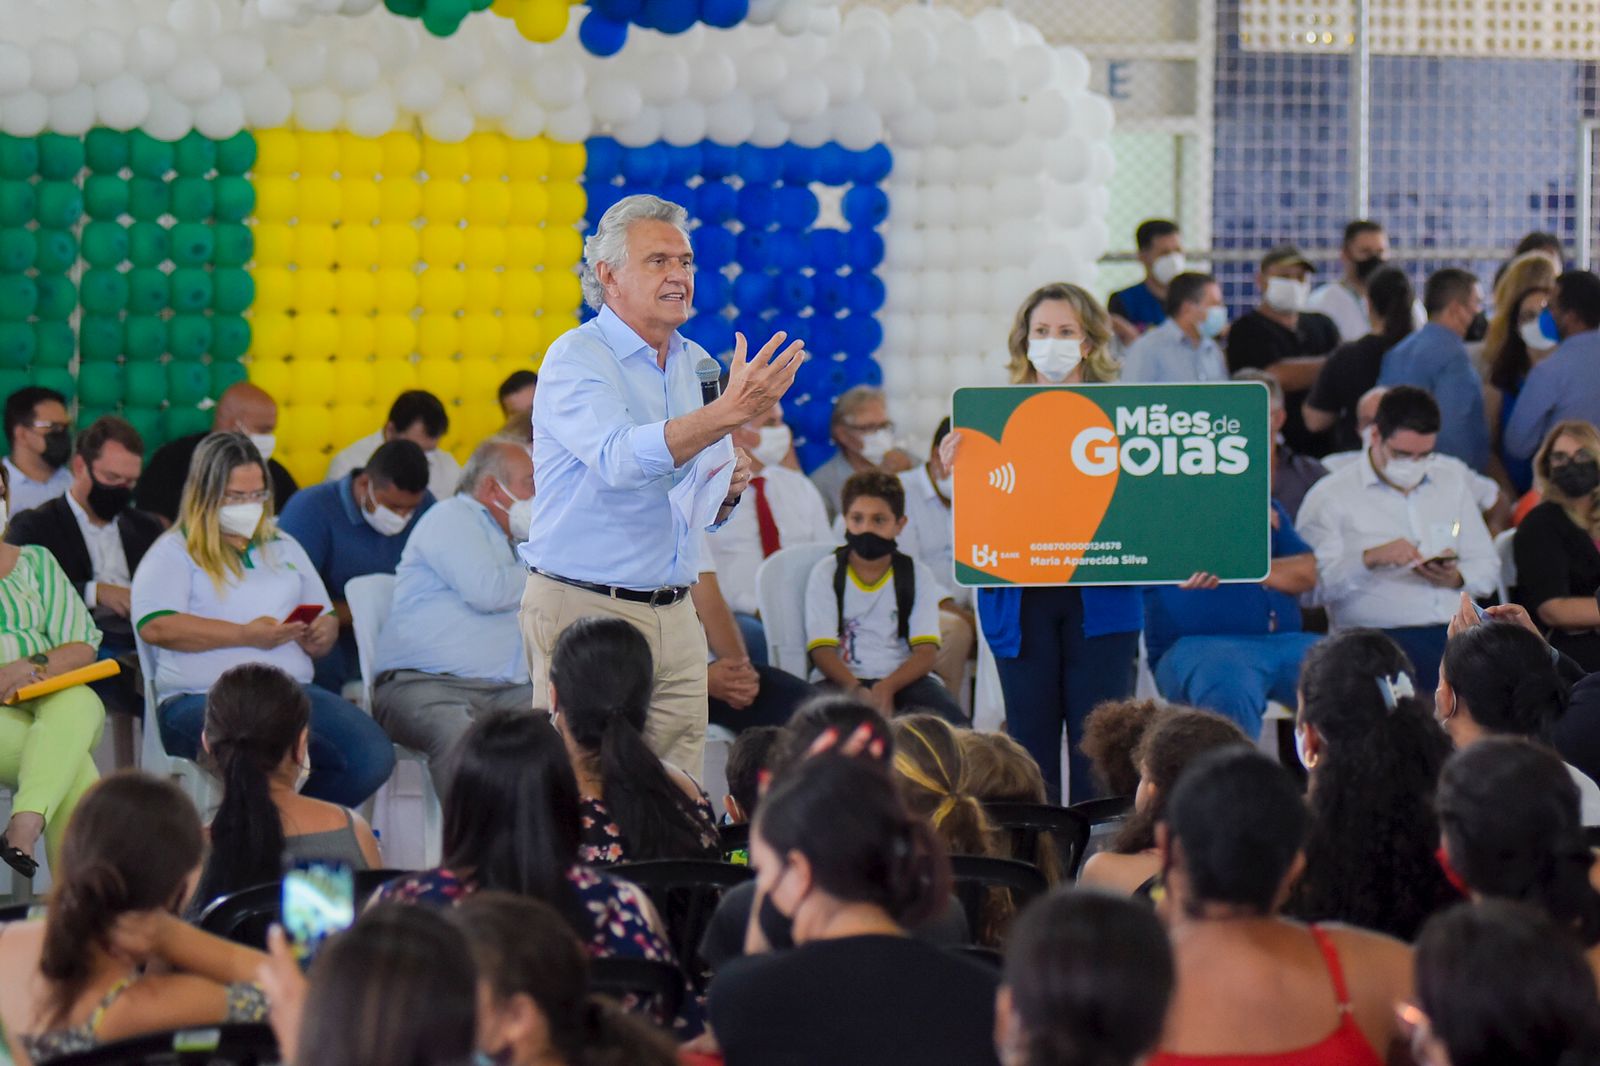 Governador Ronaldo Caiado entrega cartões do programa Mães de Goiás em Trindade